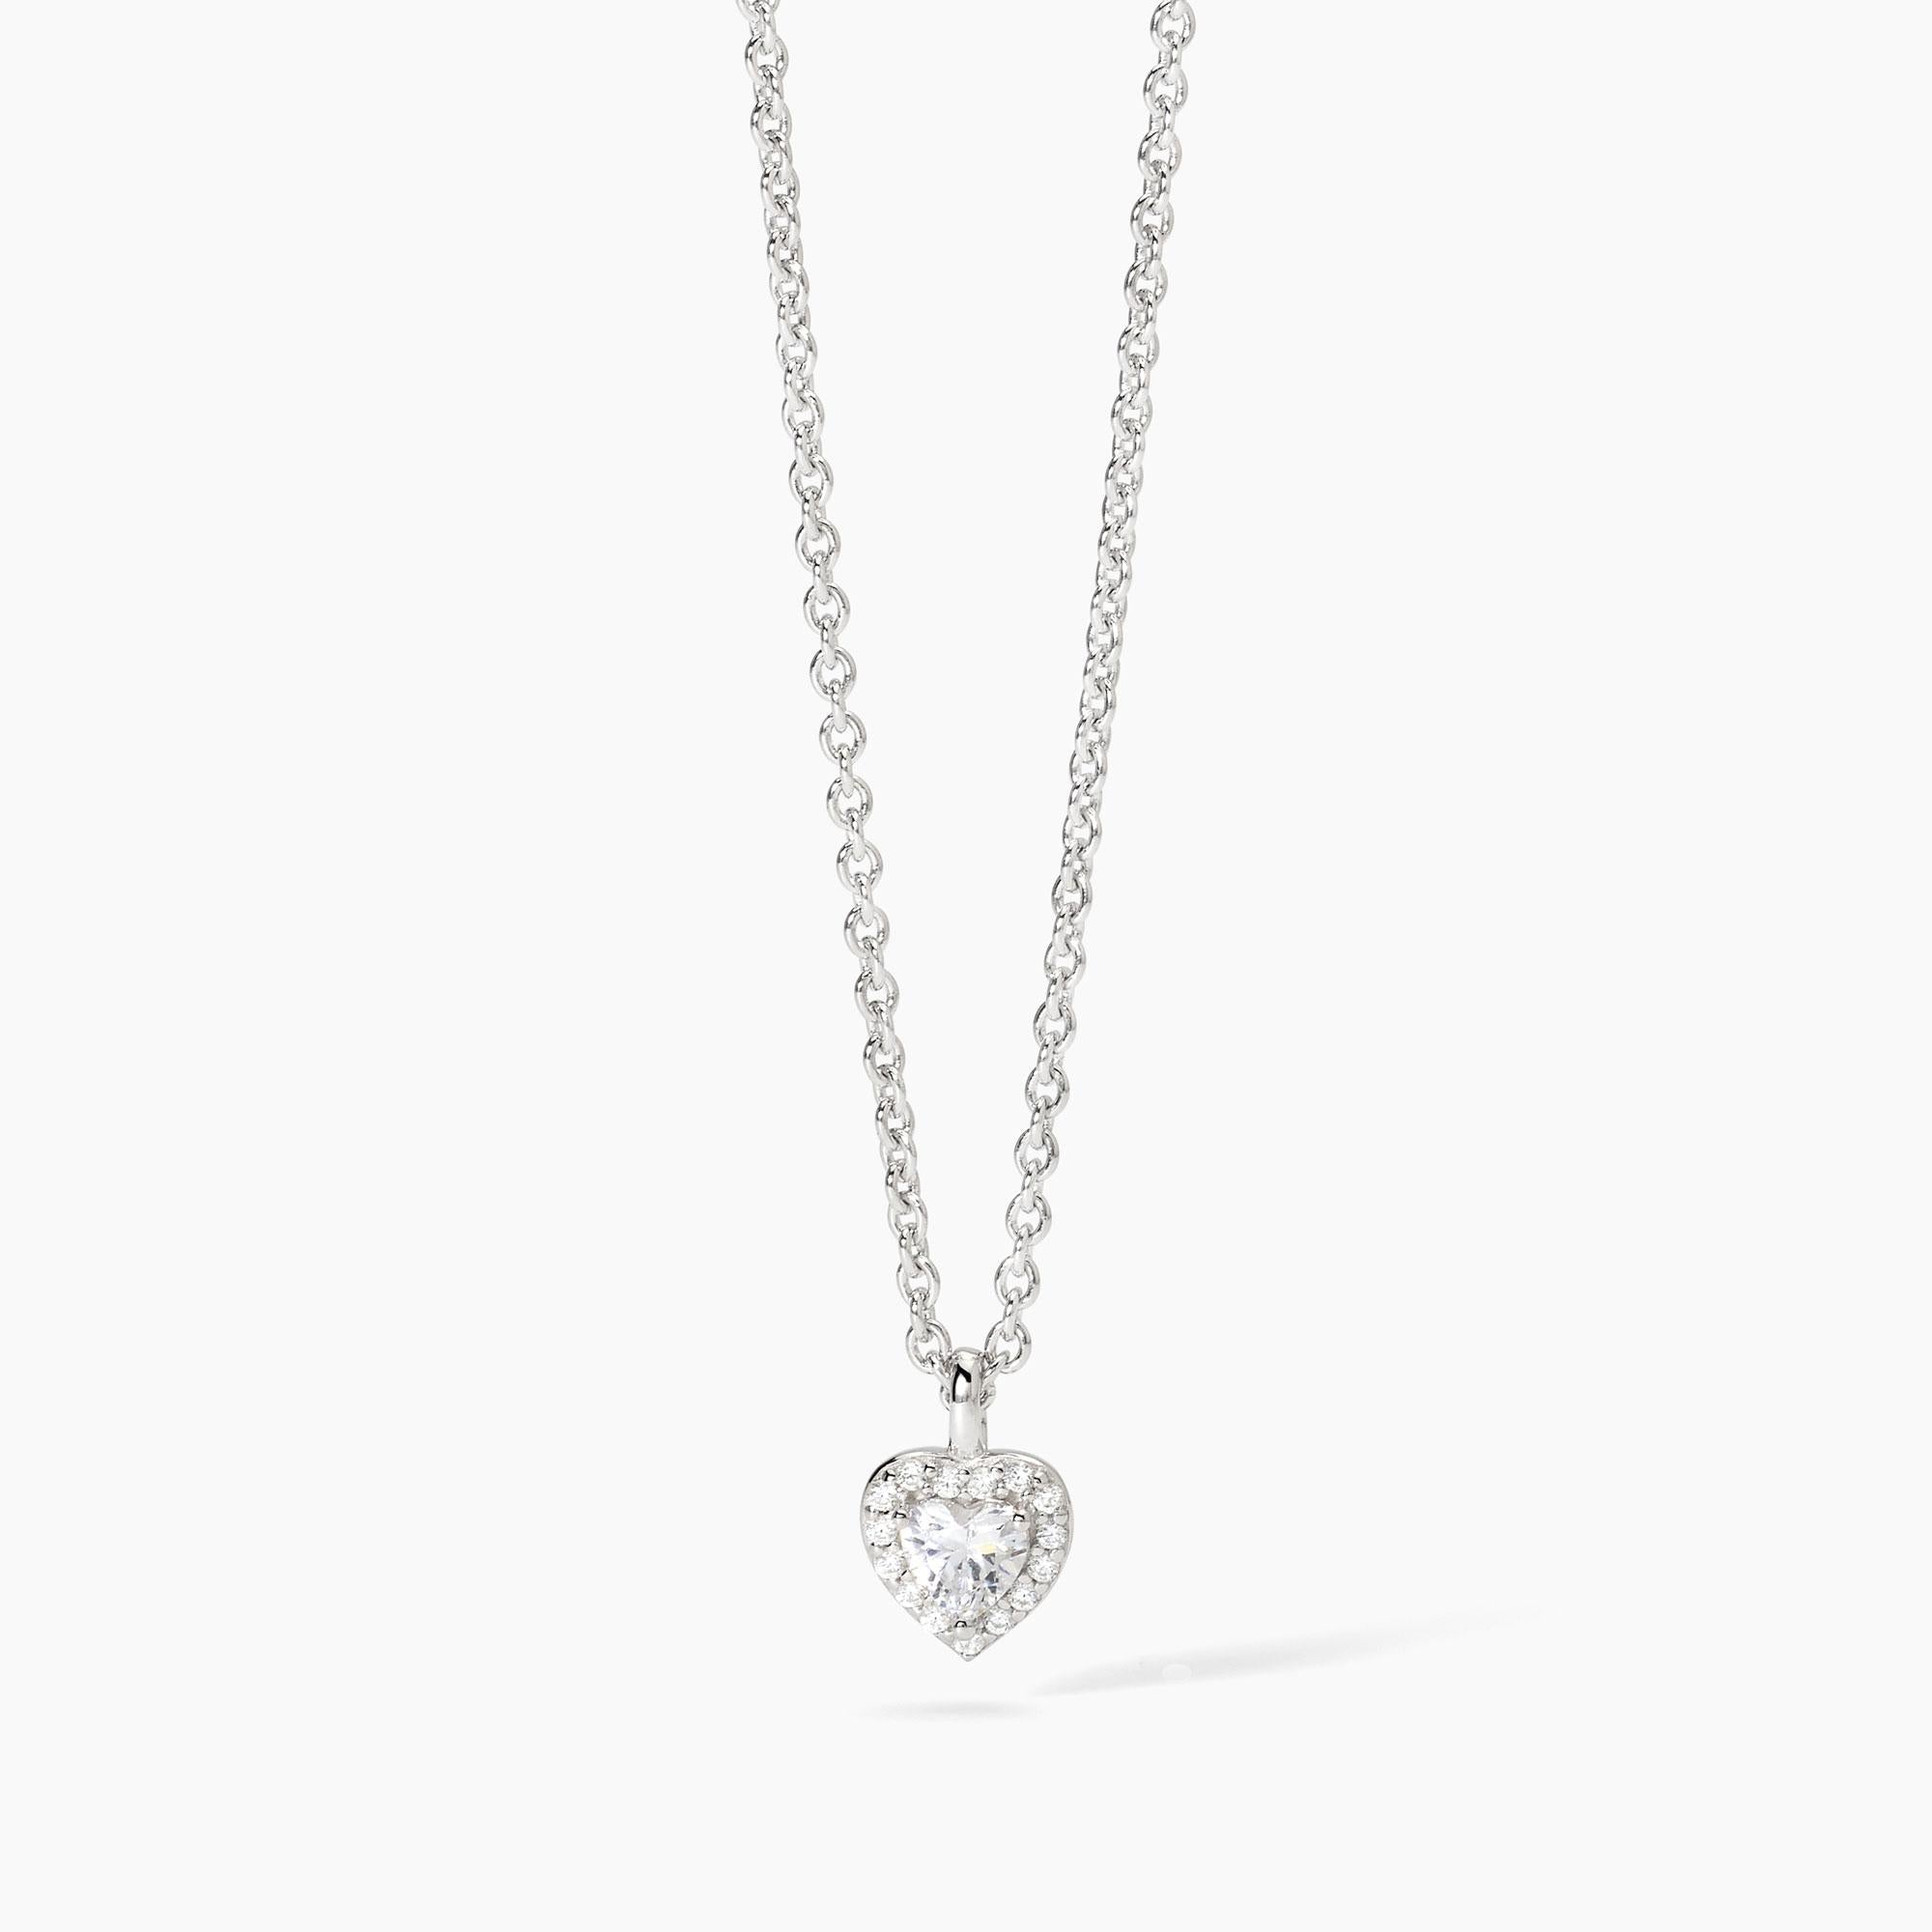 Mabina Donna - Girocollo in argento con ciondolo a forma di cuore LOVE AFFAIR - 553666